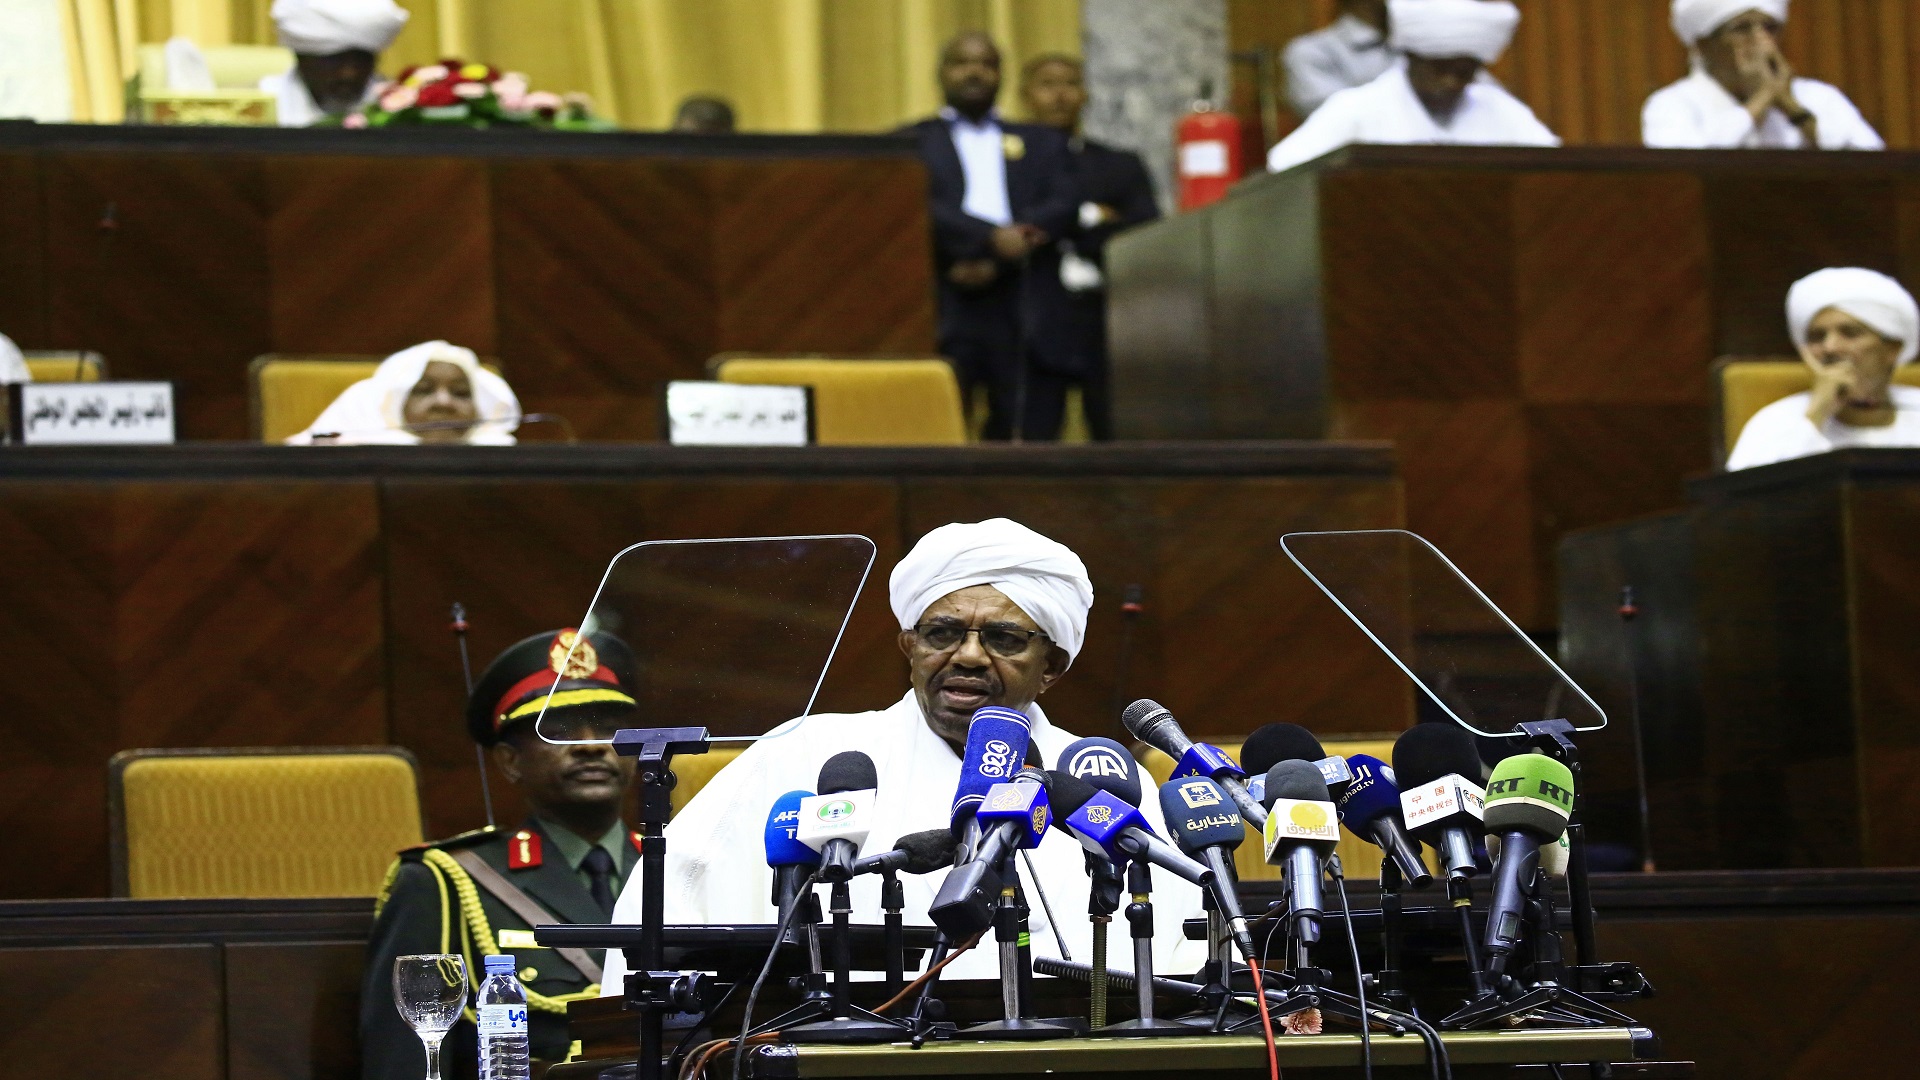 حجز موعد قنصلية السودان بجدة